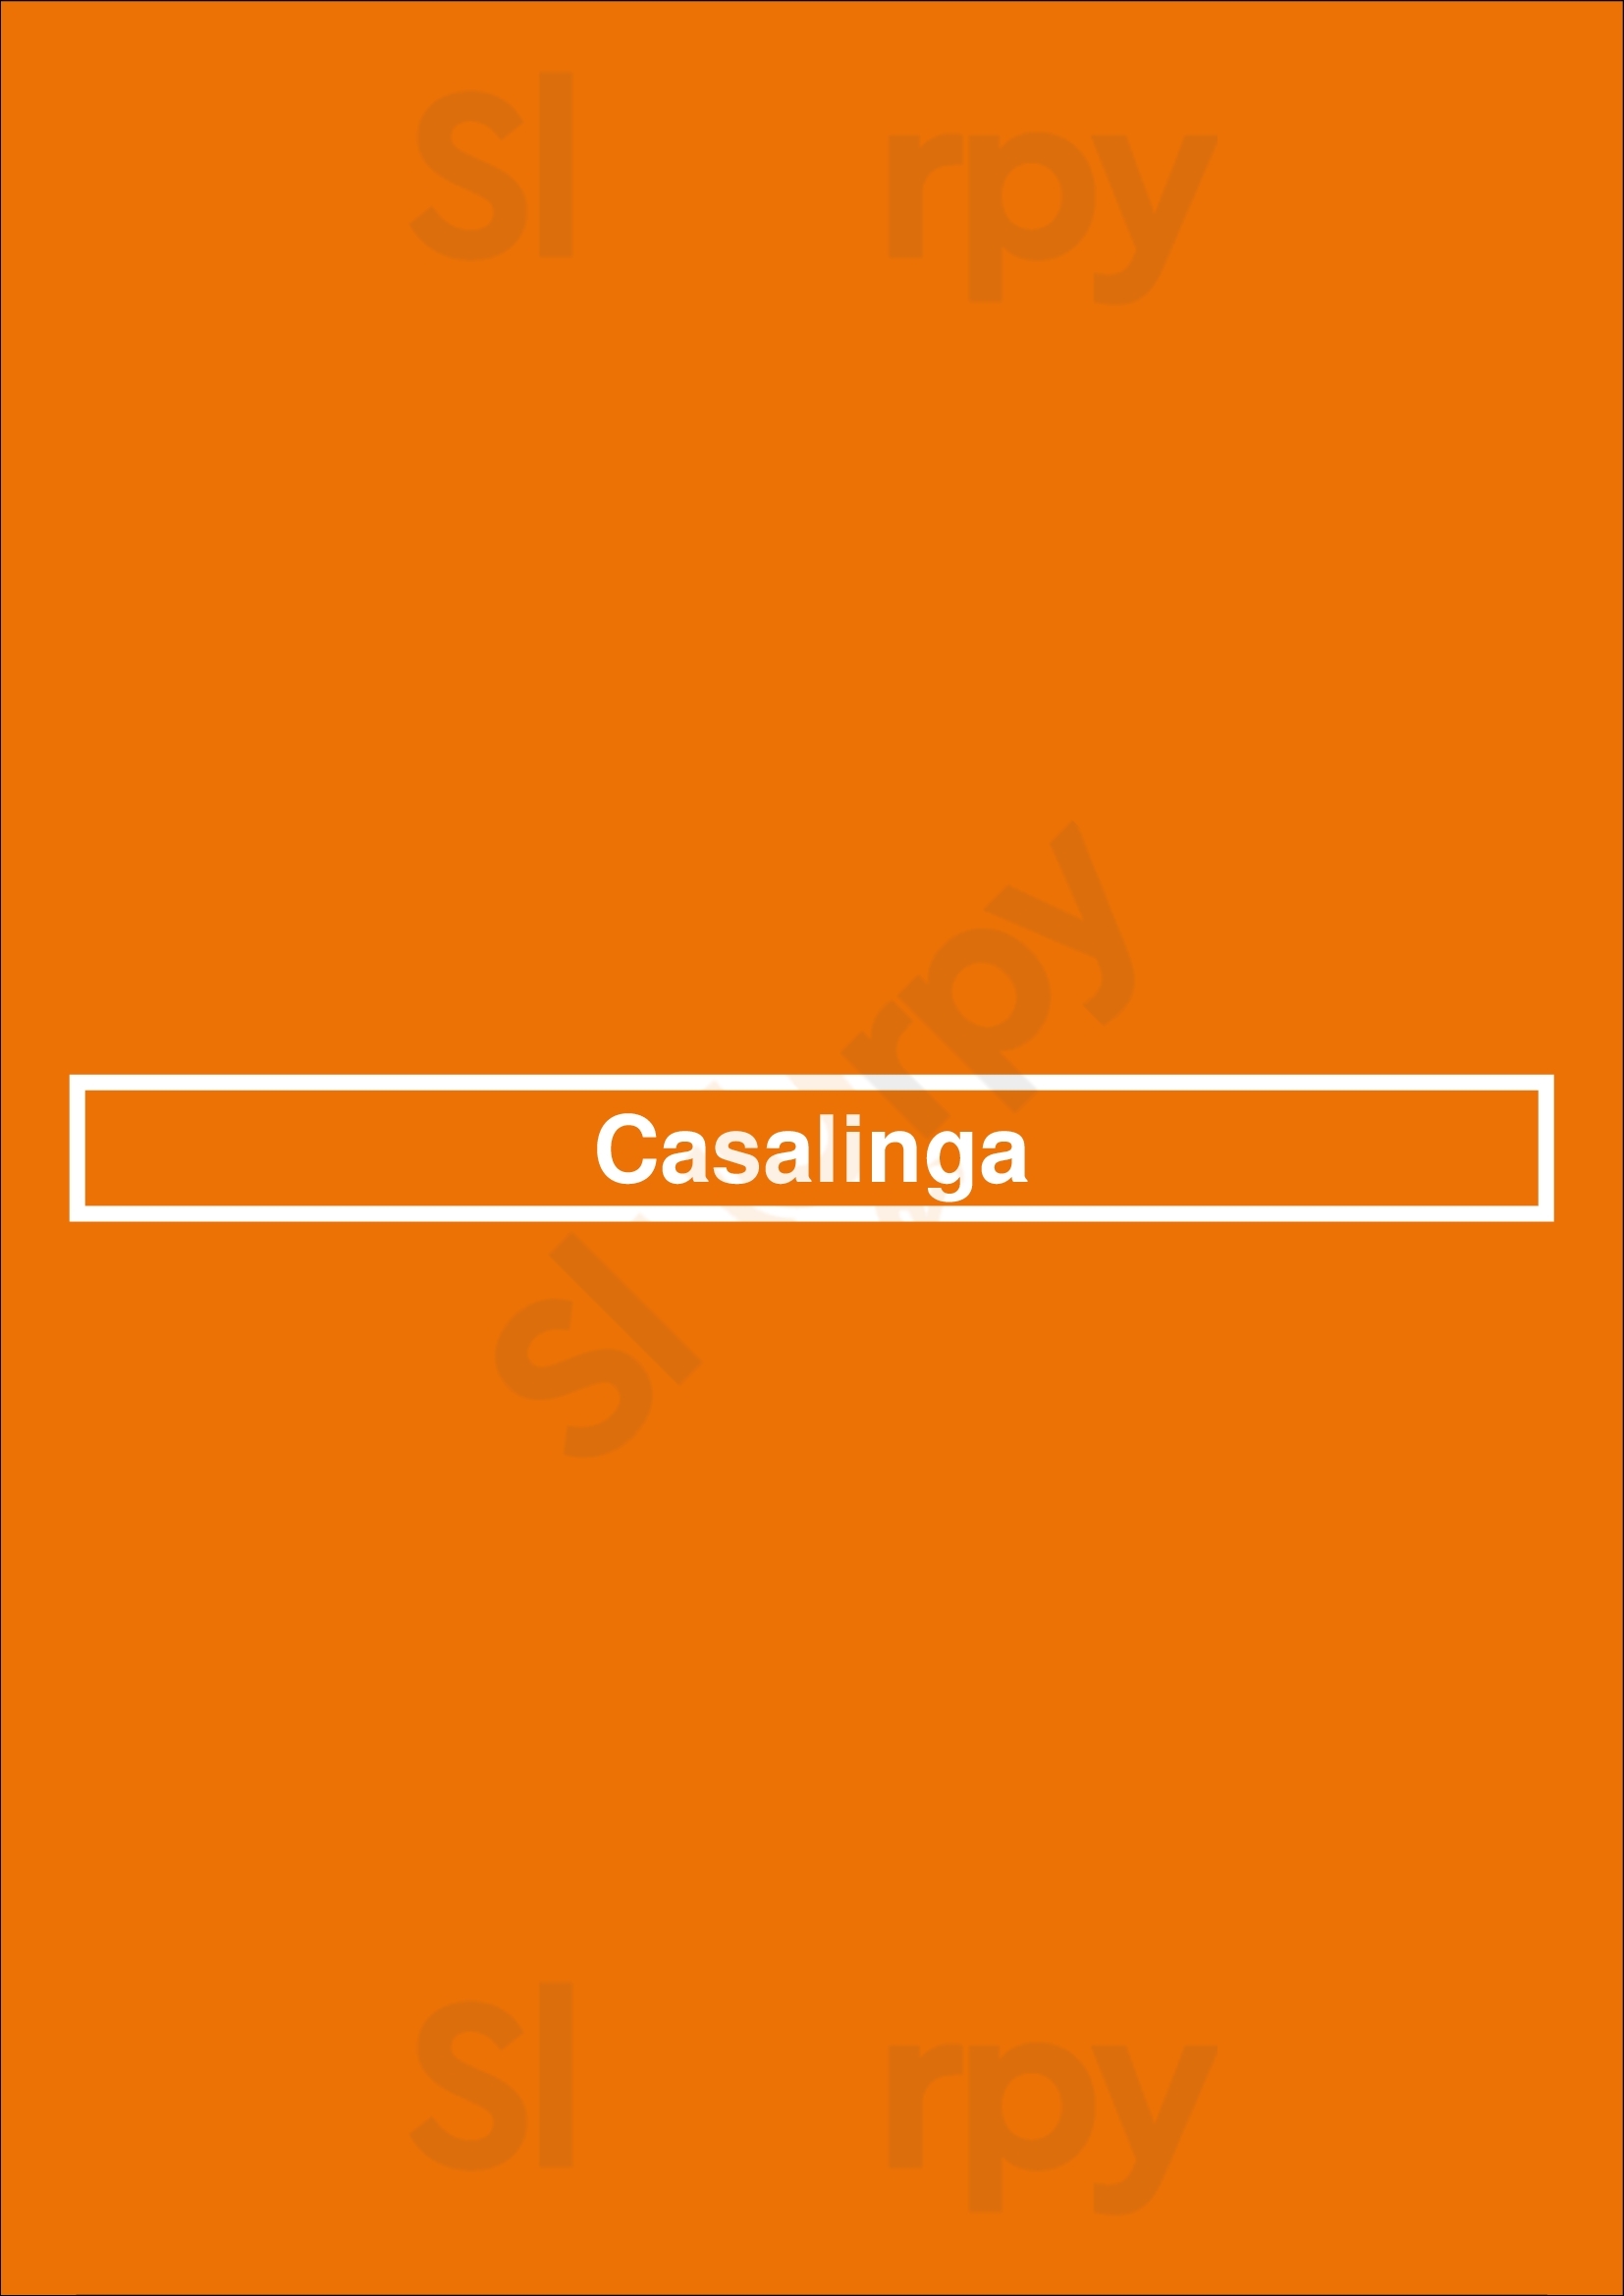 Casalinga Croydon Menu - 1